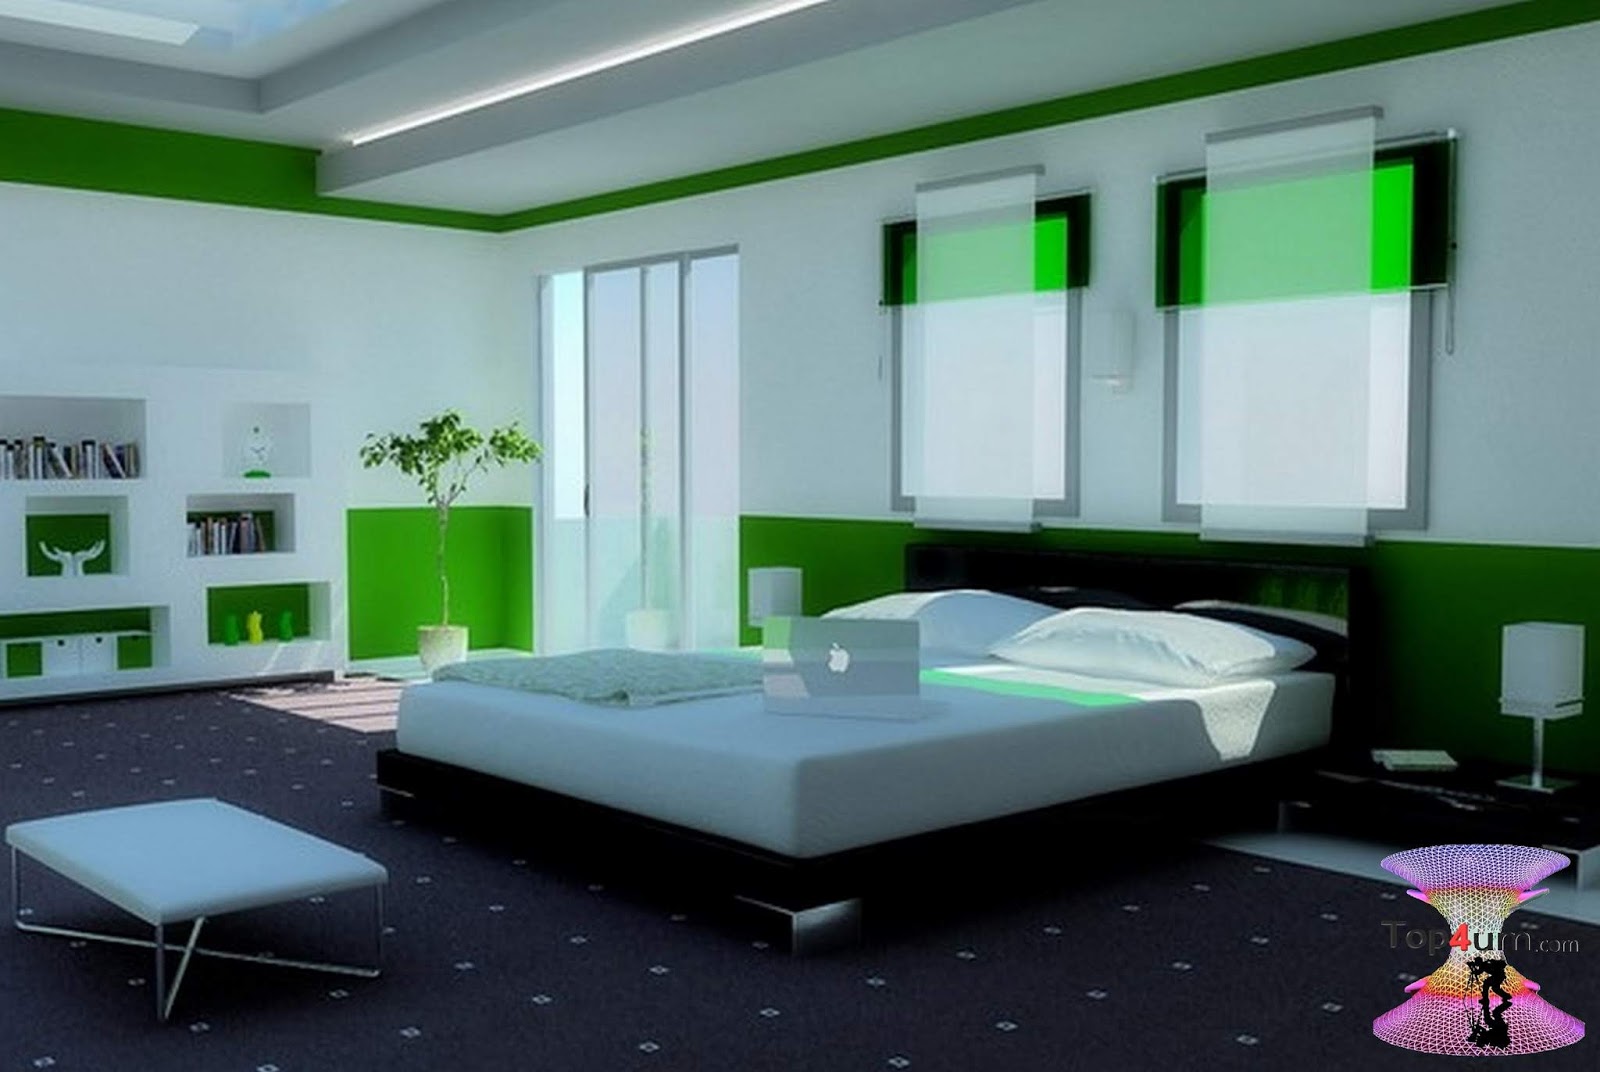 Красивая комната в зеленых тонах